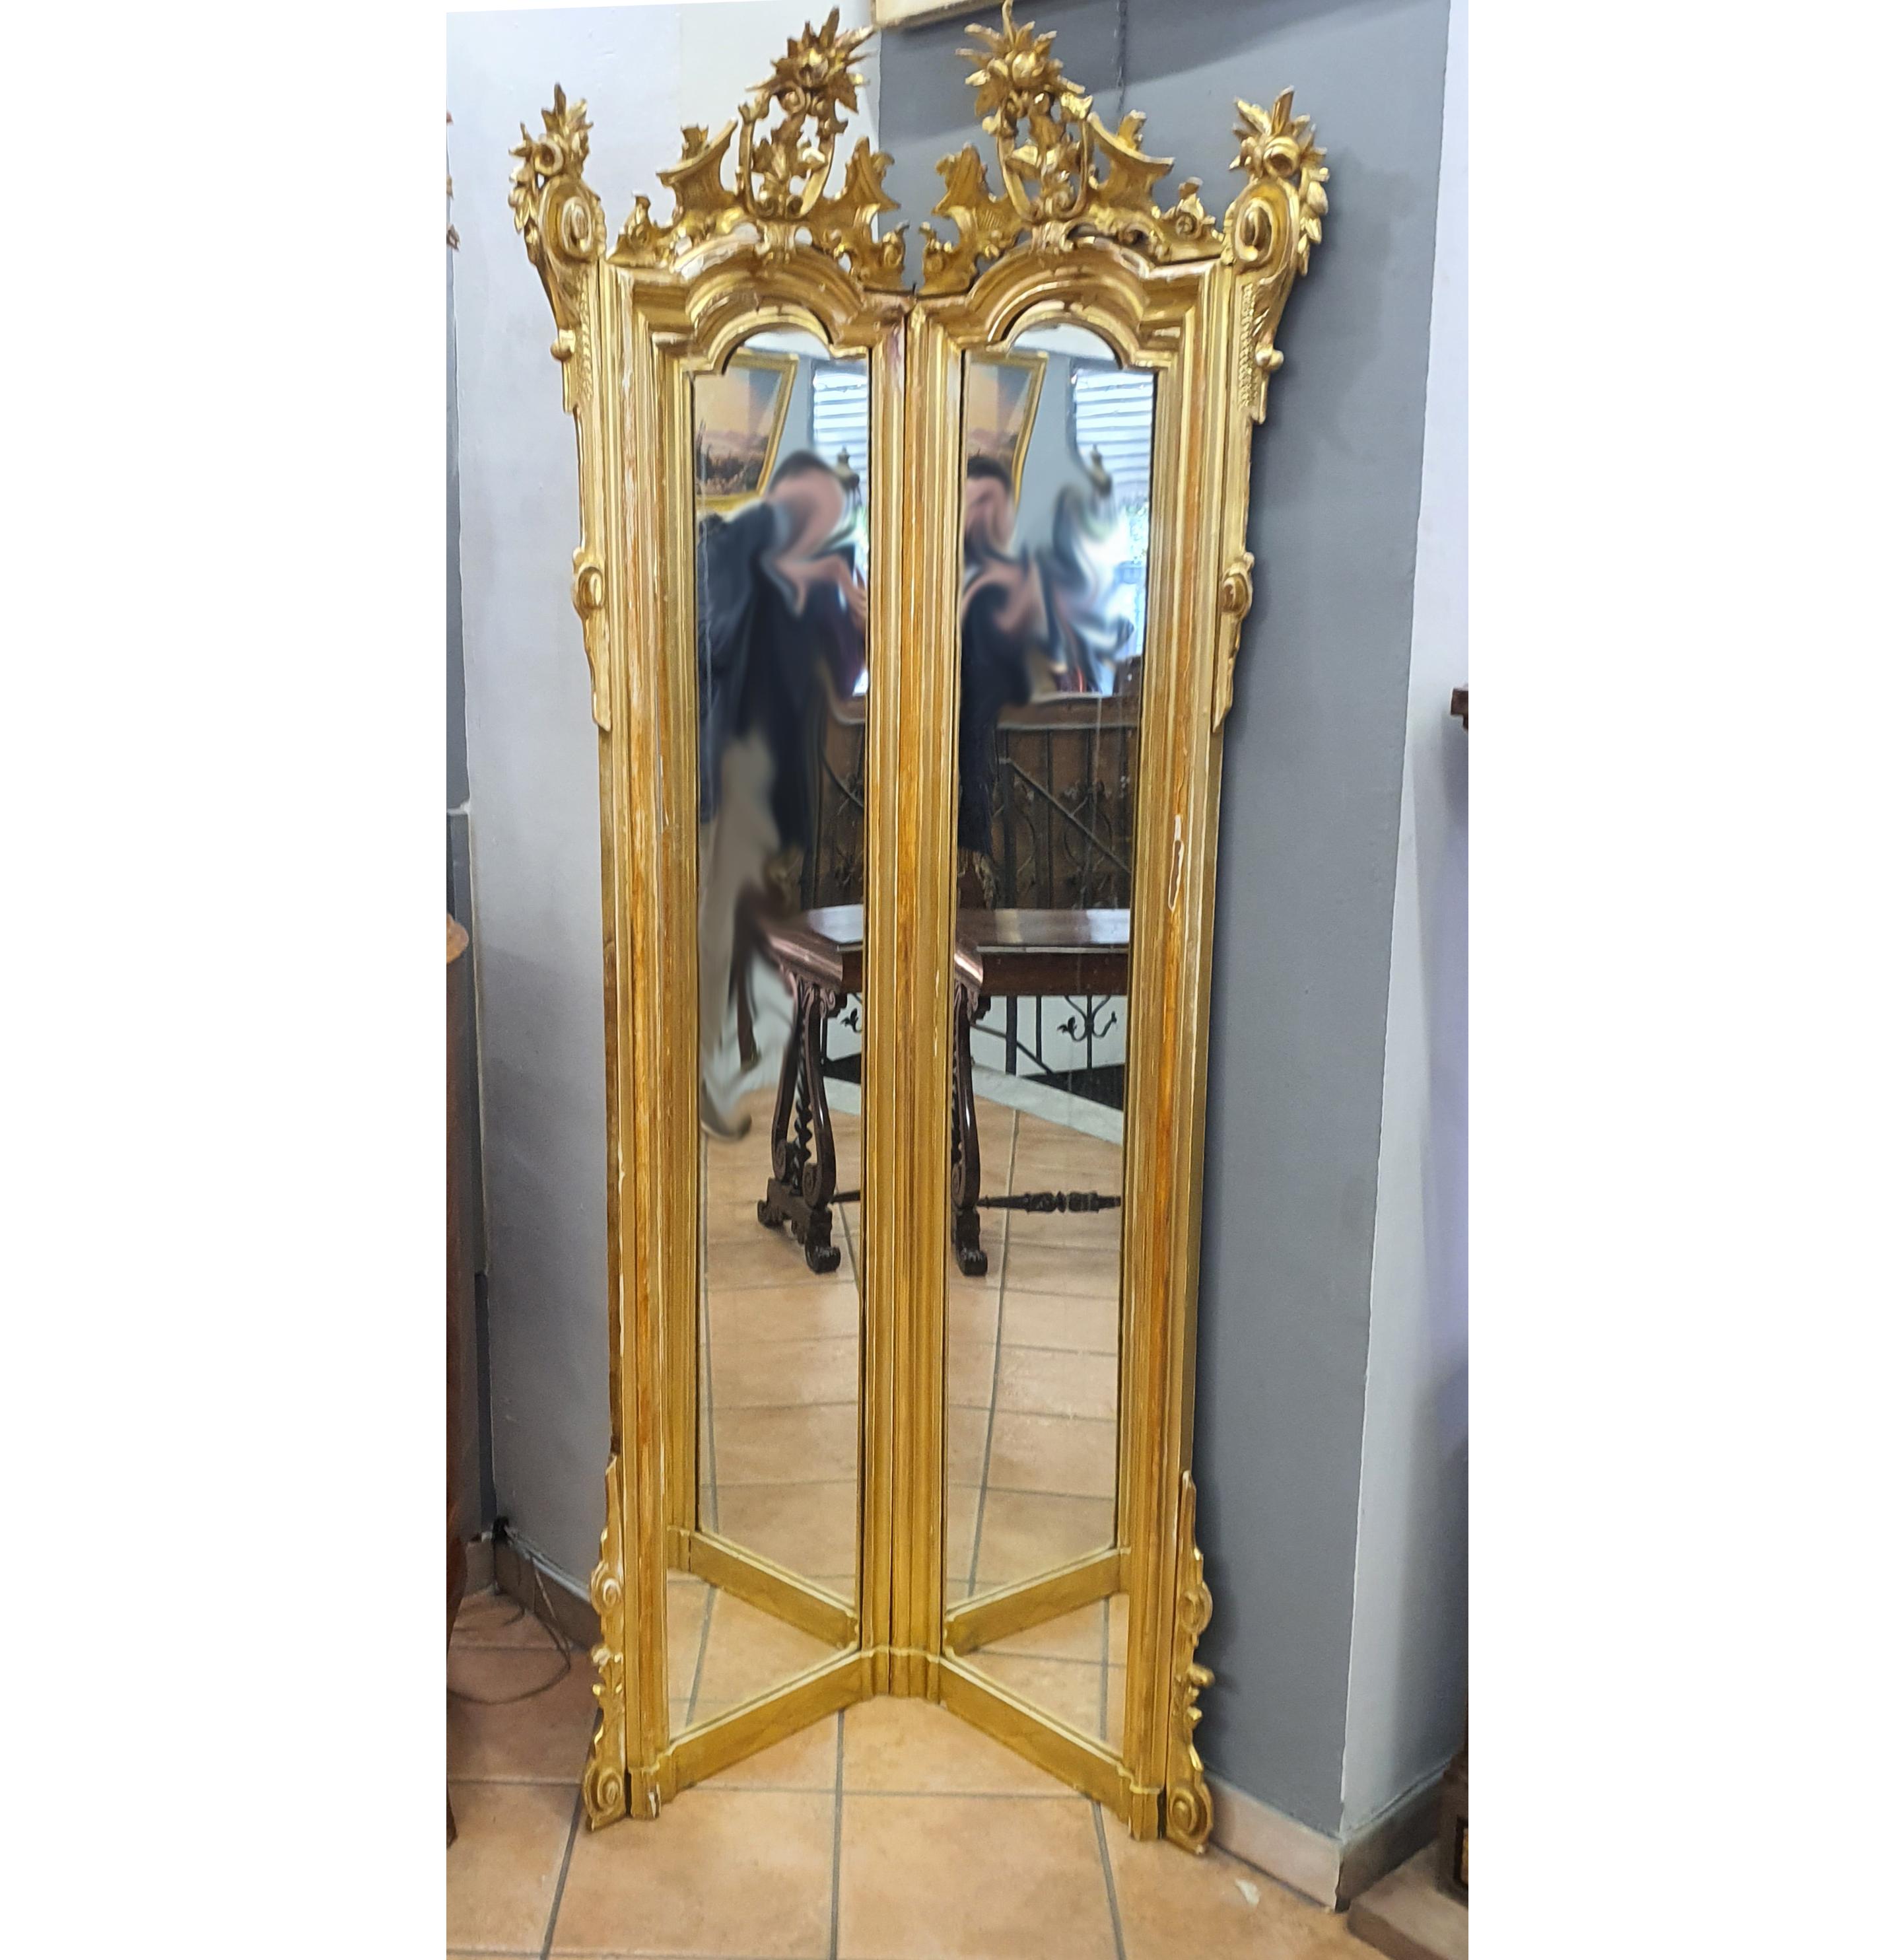 Miroir de sol d'angle élégant et unique, en bois doré à la feuille d'or pur. Il provient d'une importante résidence de la noblesse italienne.